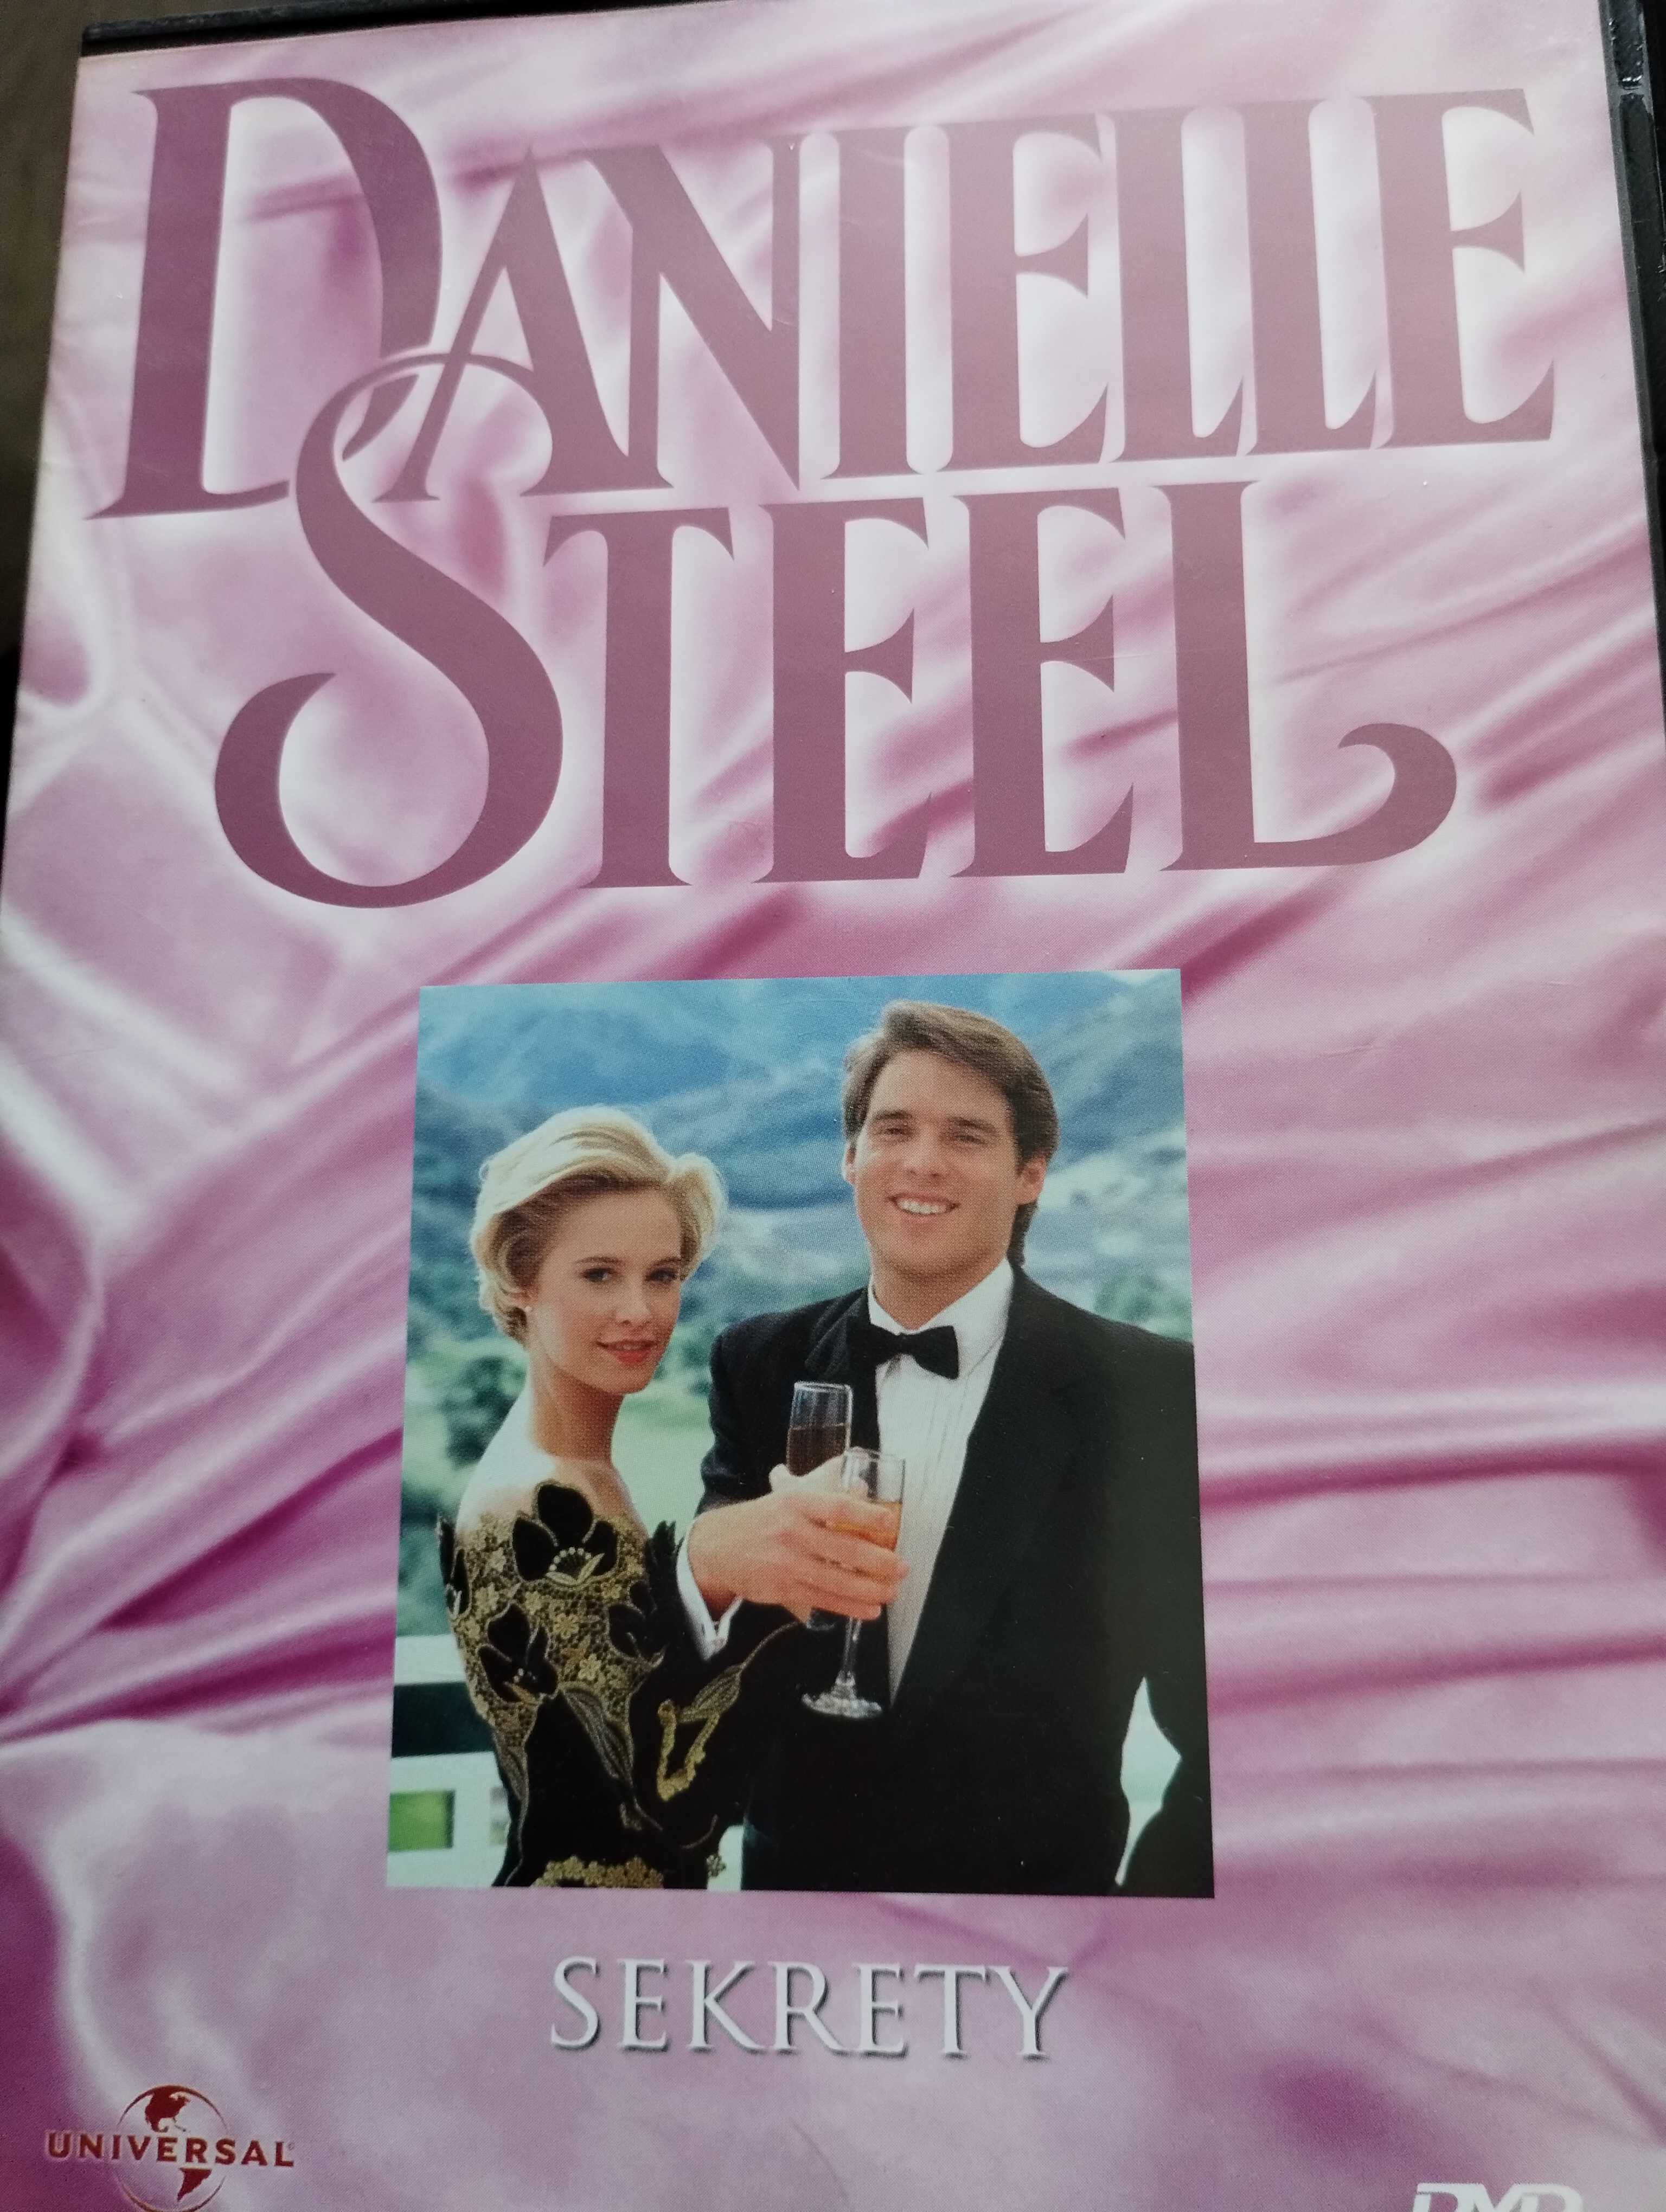 Sprzedam płyty z filmami na dvd. Danielle steel